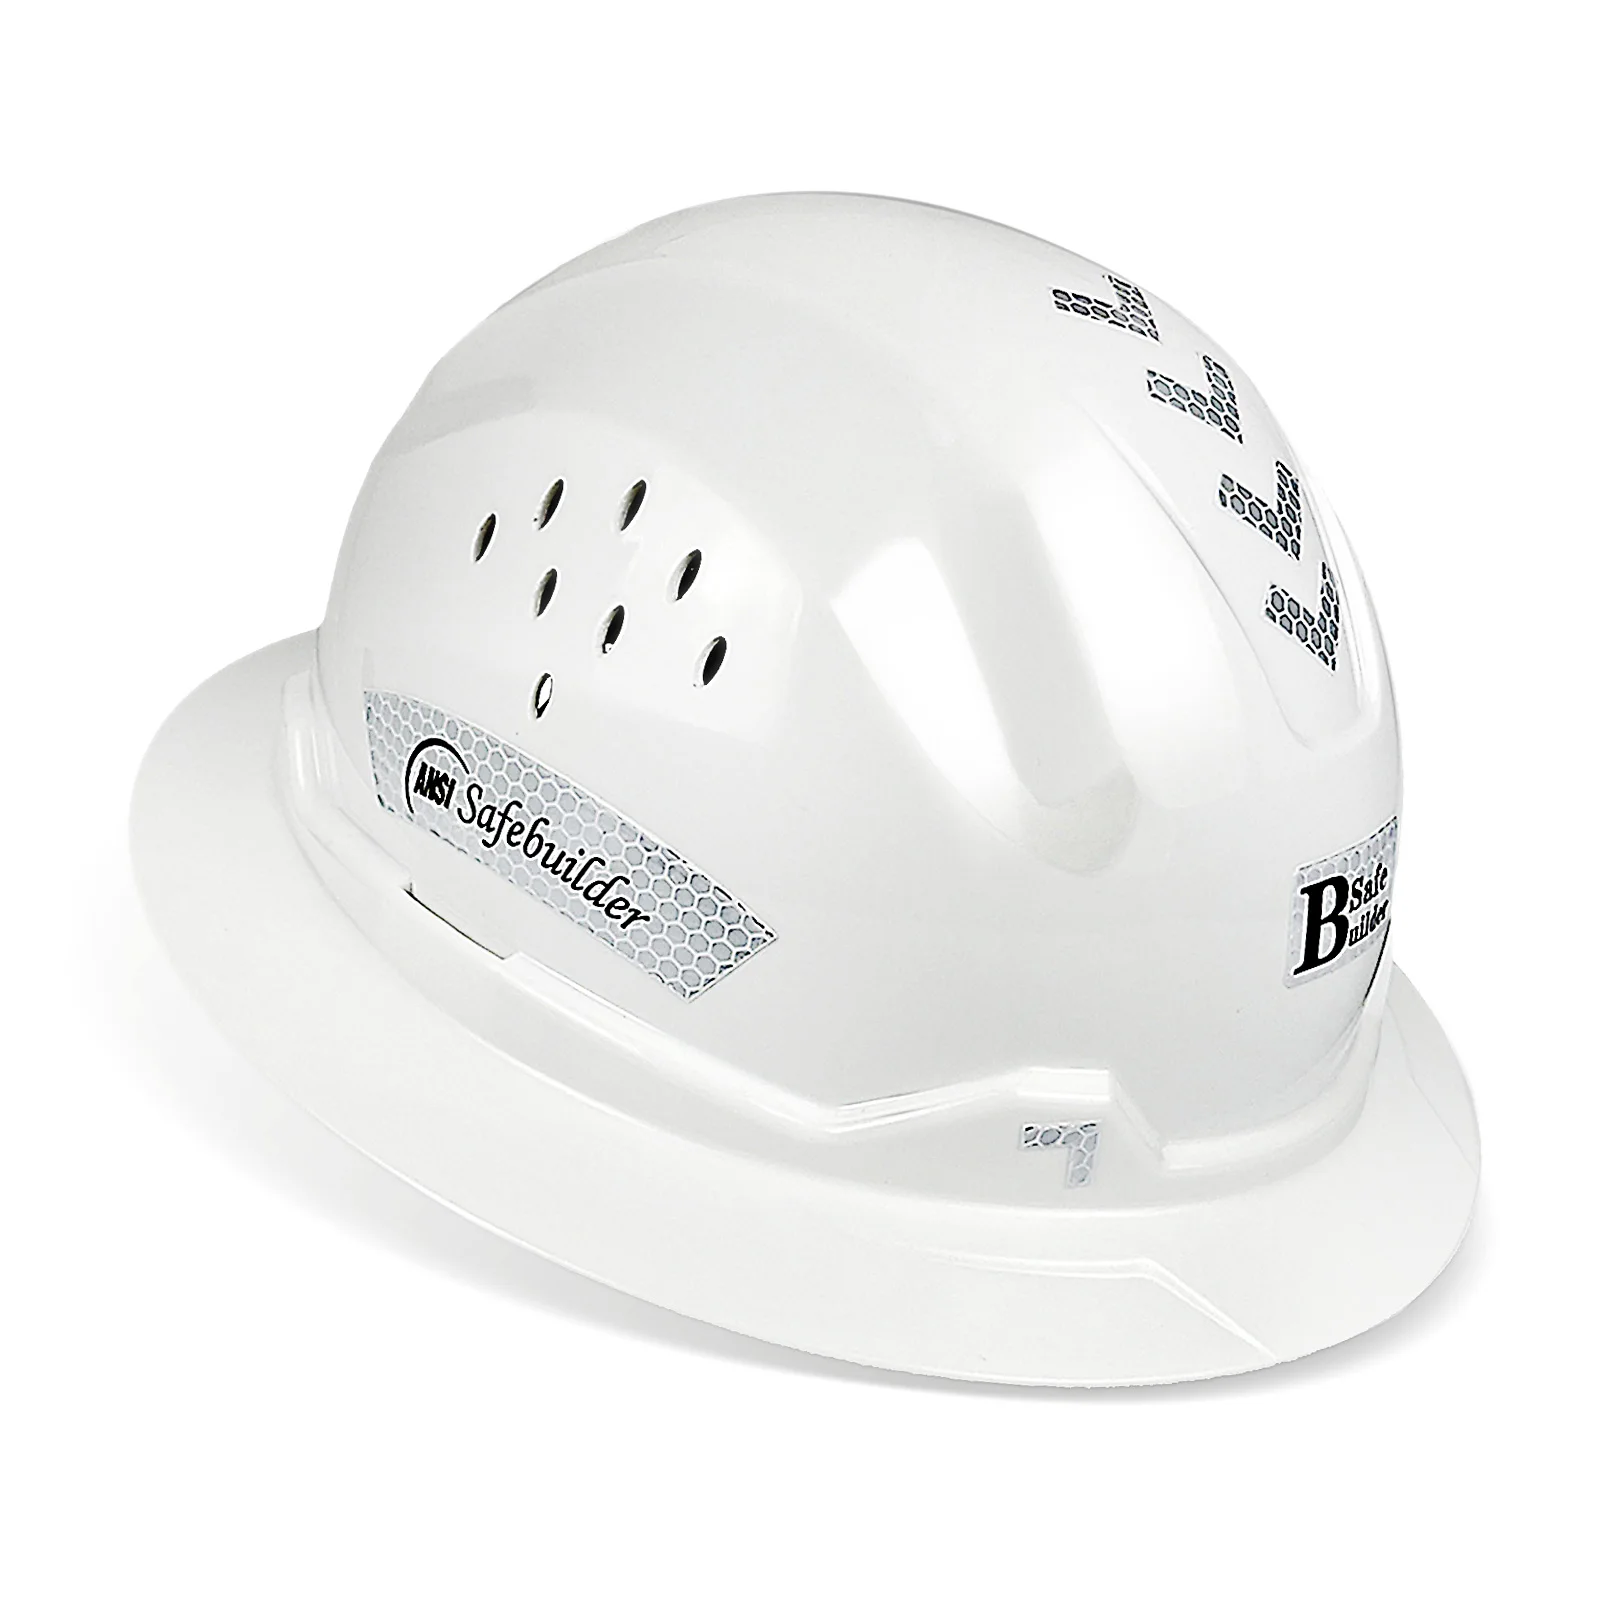 Elmetto a tesa intera casco di sicurezza traspirante ventilato ANSI Z89.1 elmetti leggeri approvati costruzione e industriale